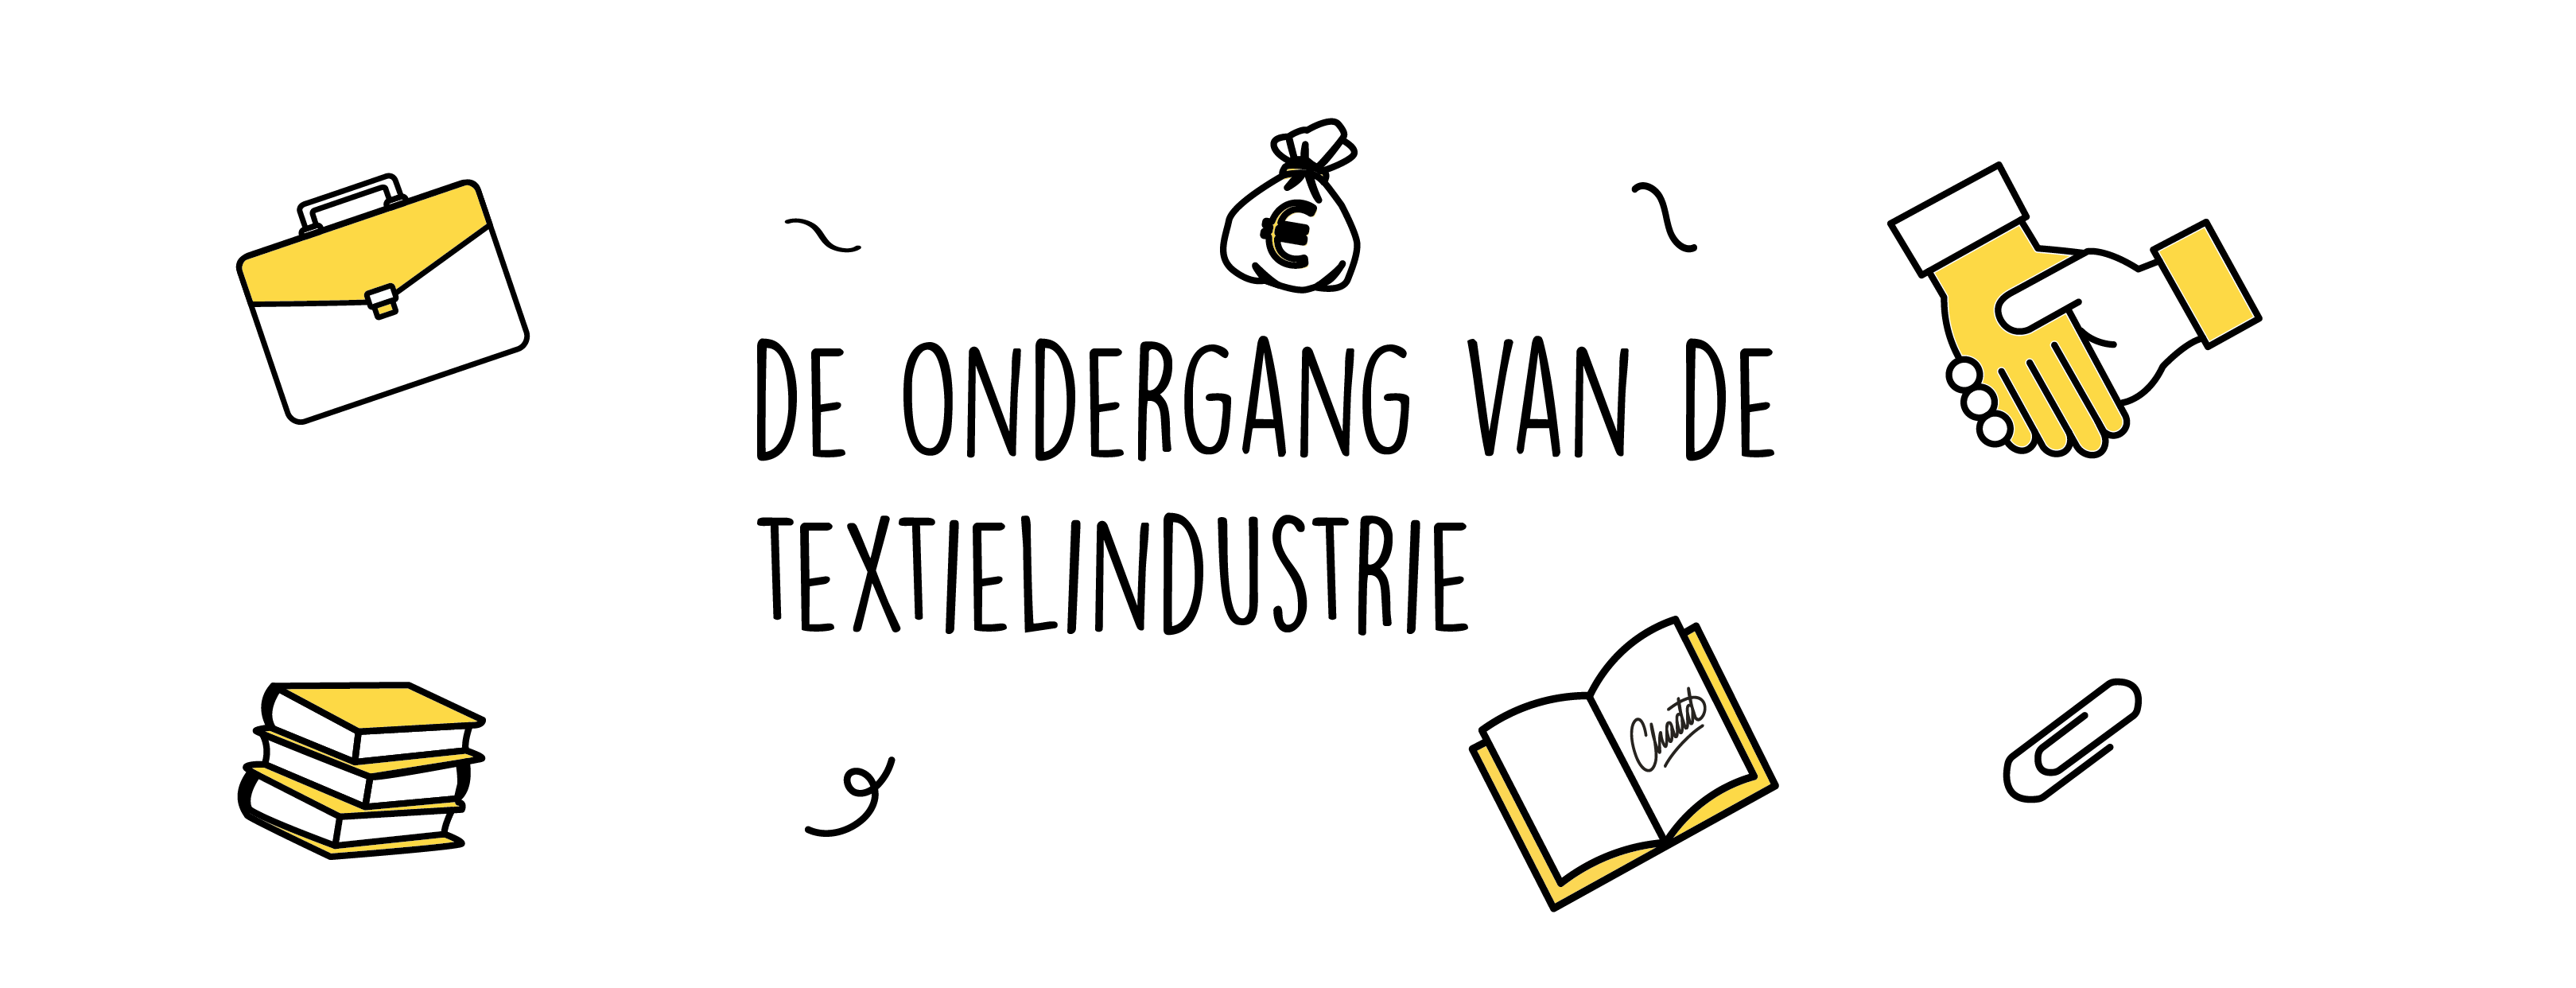 textielindustrie